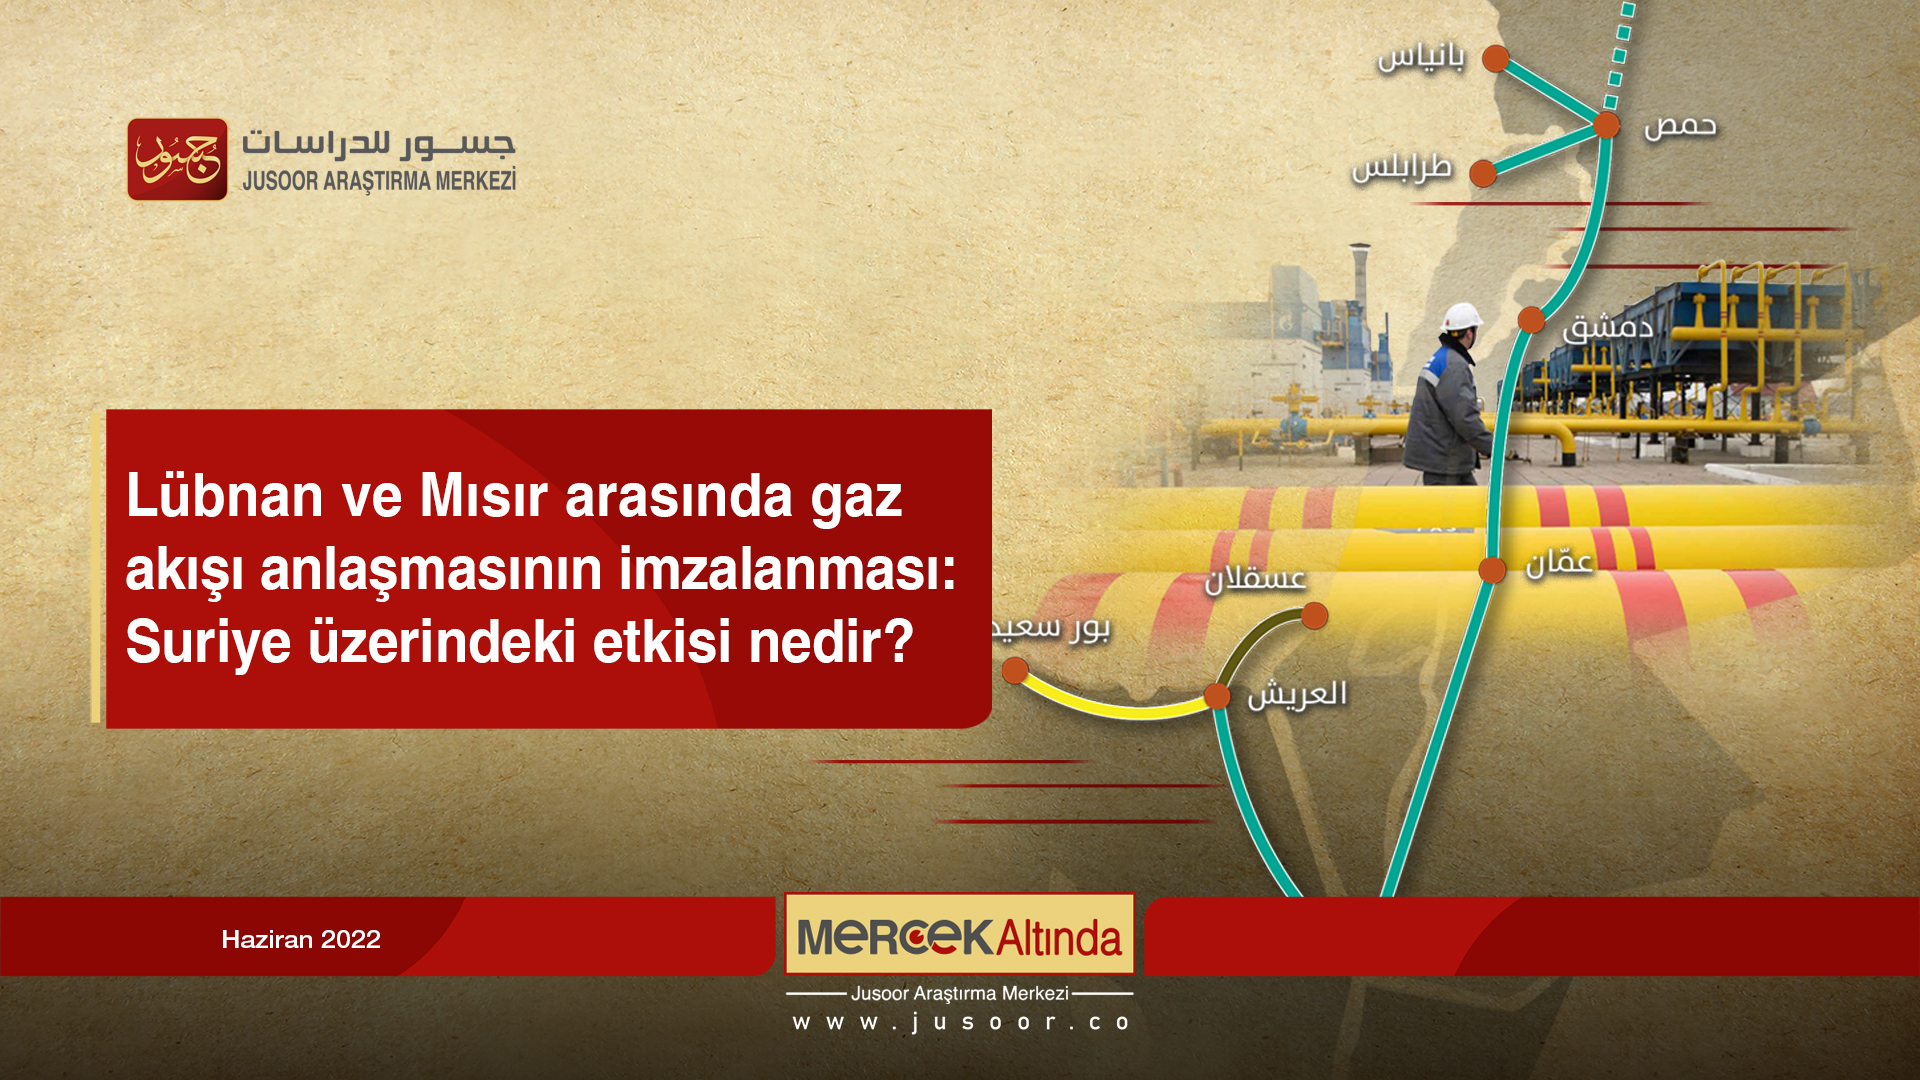 Lübnan ve Mısır arasında gaz akışı anlaşmasının imzalanması: Suriye üzerindeki etkisi nedir